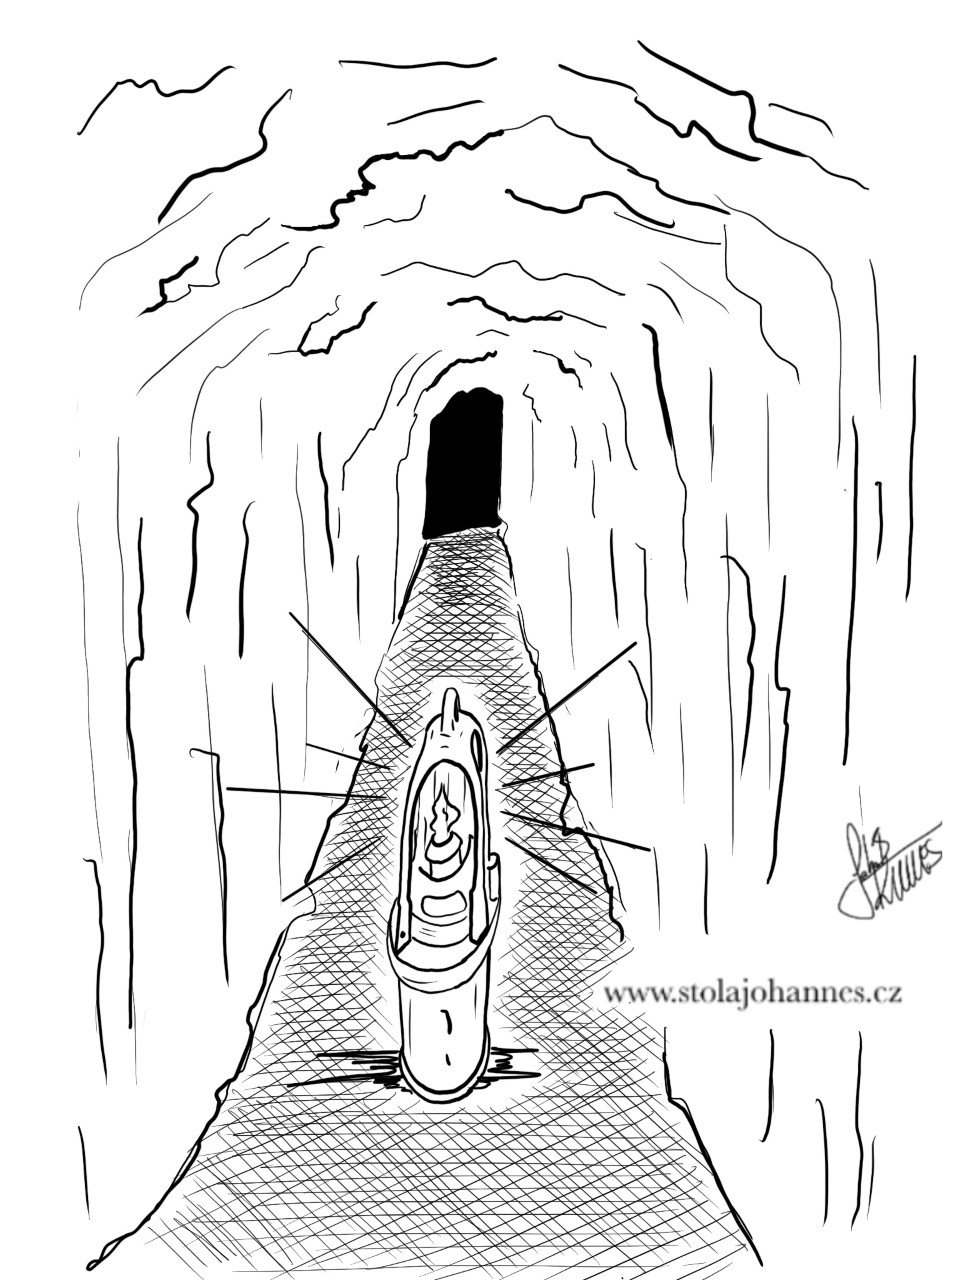 Kahan v jeskyni